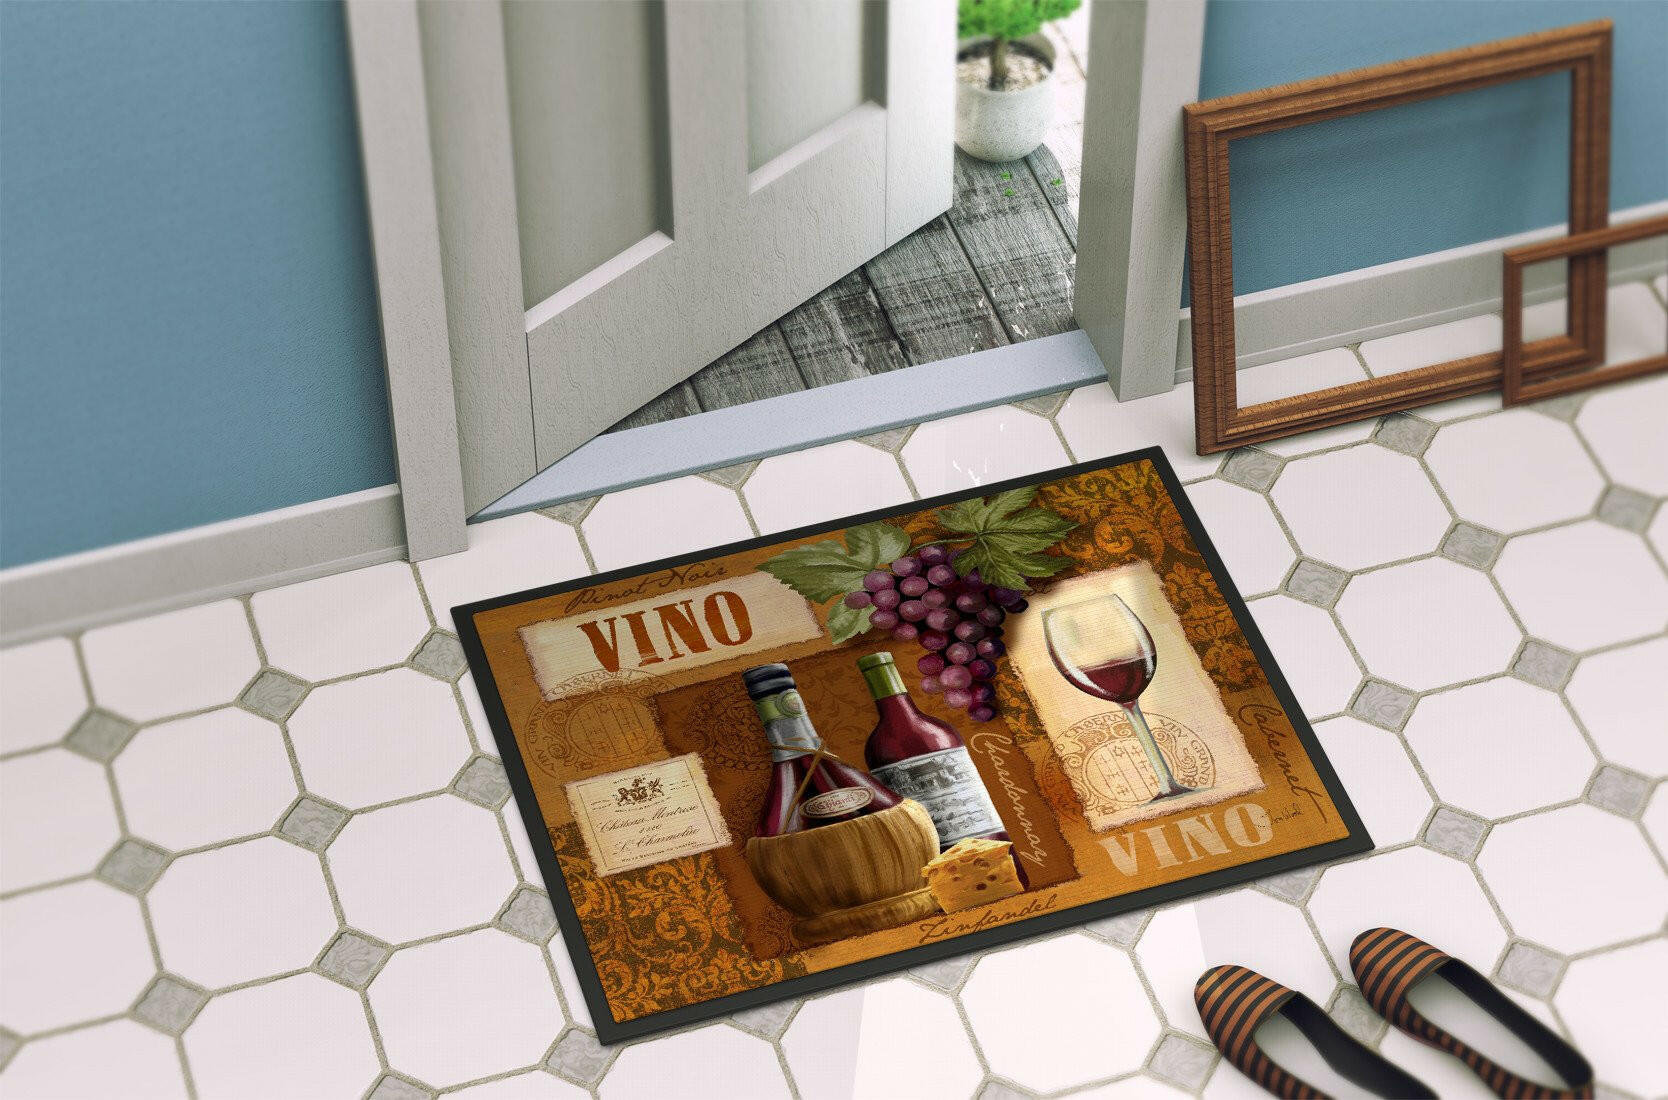 Vino Wine Indoor or Outdoor Mat 18x27 PTW2045MAT - the-store.com